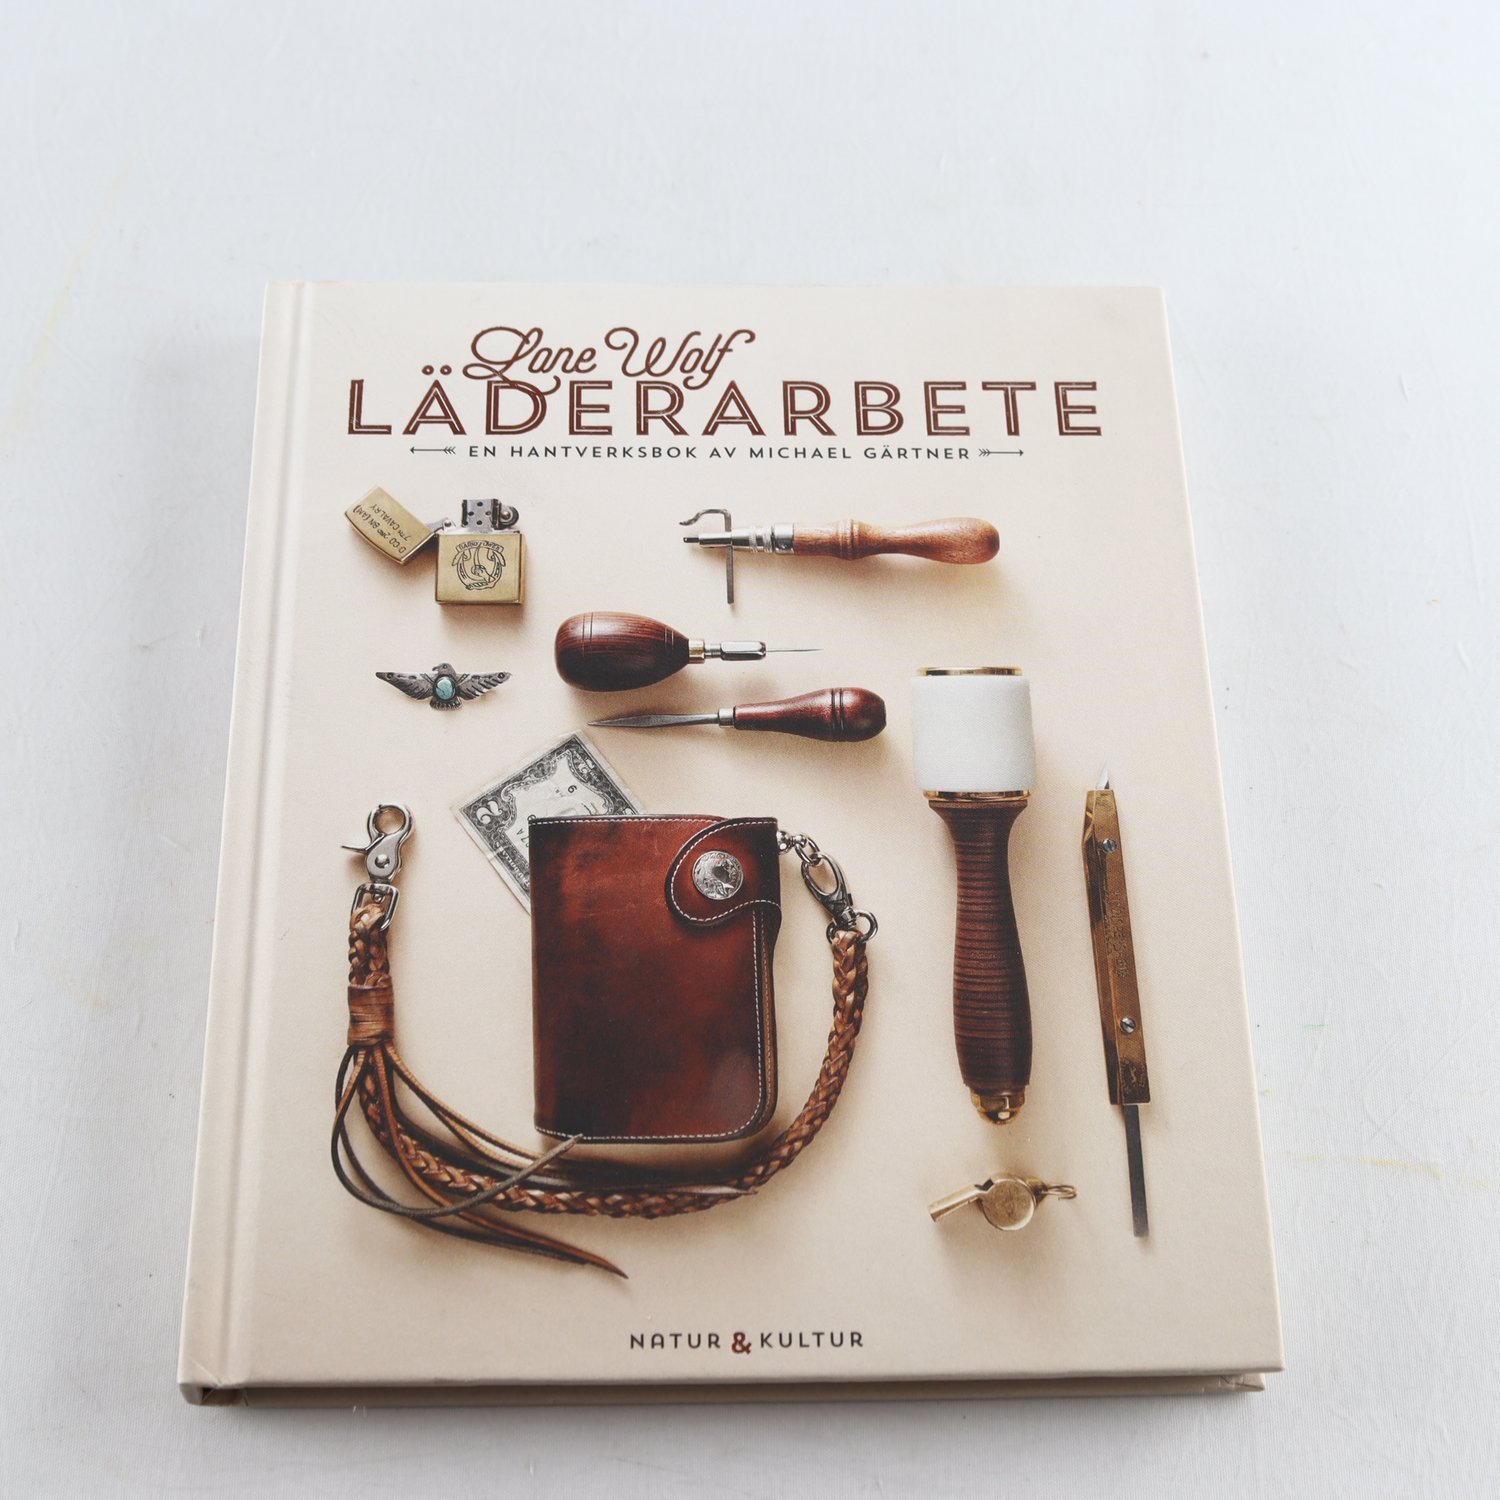 Lone Wolf Läderarbete, en hantverksbok av Michael Gärtner